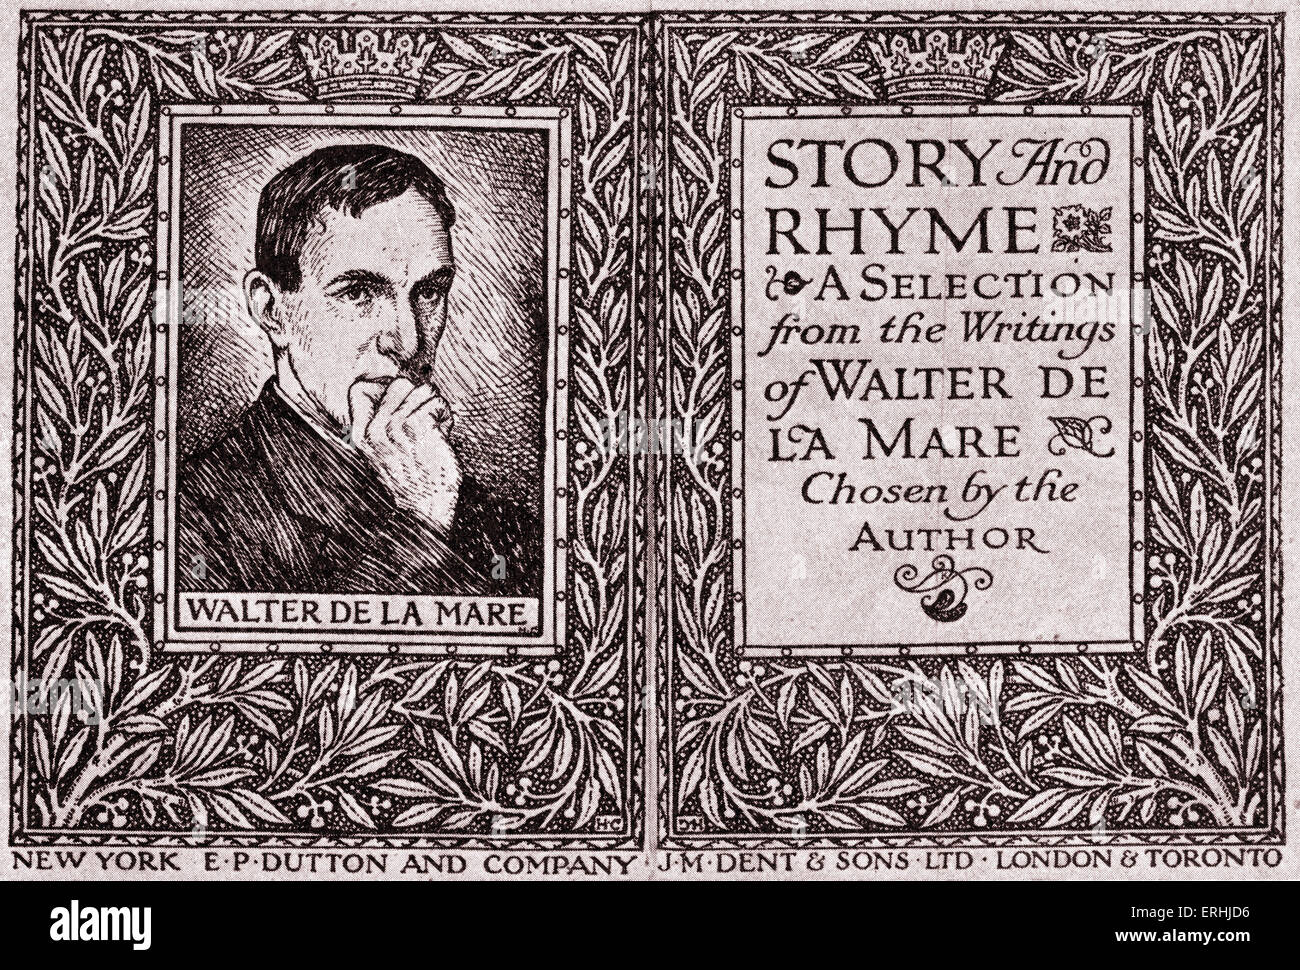 Walter de la Mare - page de titre d'une Anthologie du poète anglais, écrivain et romancier, avec un portrait de l'auteur Banque D'Images